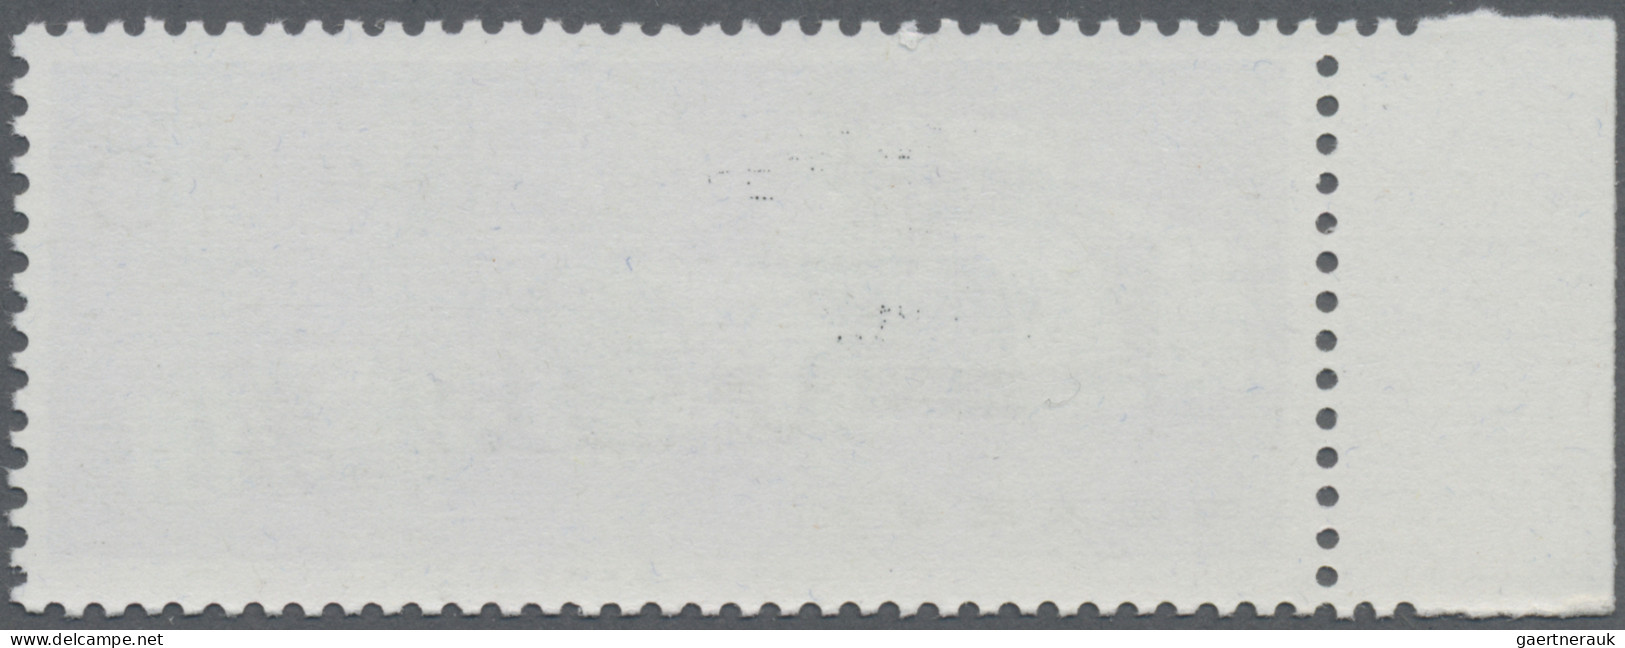 China (PRC): 1974, Machine Construction Set (N78-81),MNH, With Margin, Stamp B1 - Ongebruikt